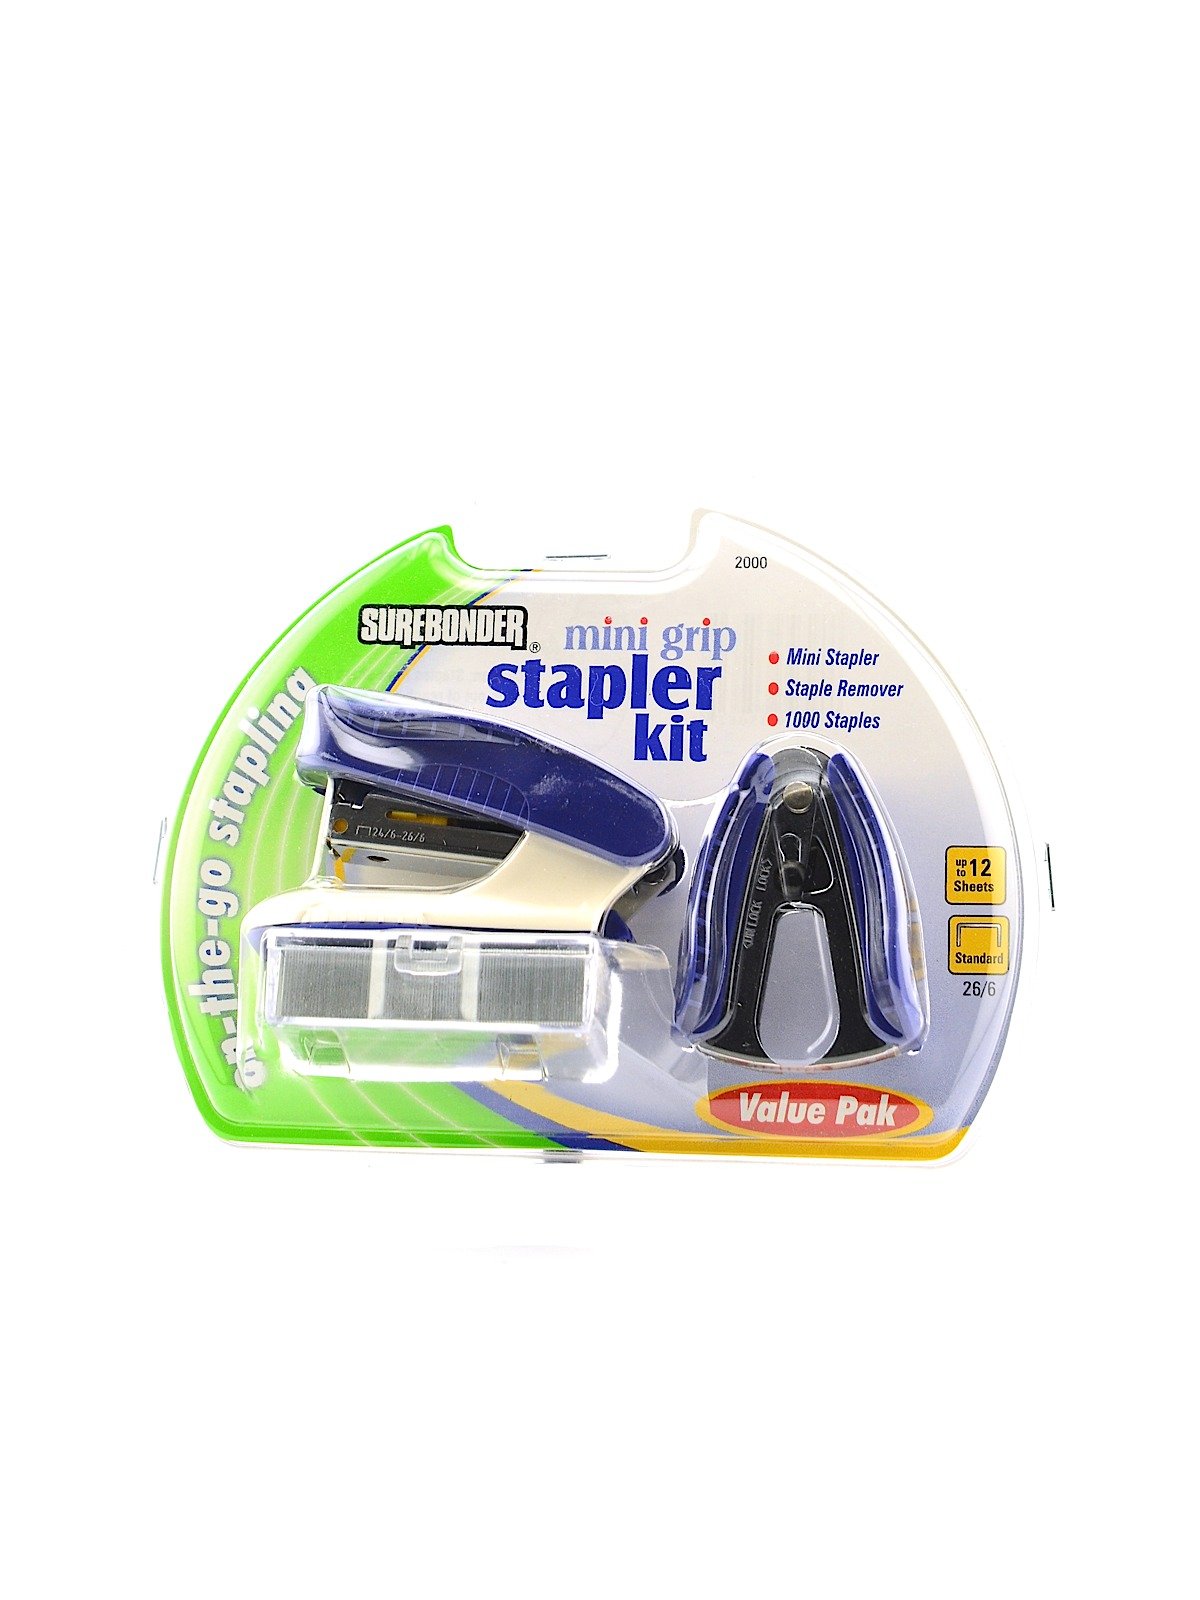 Surebonder - Mini Grip Stapler Value Pack Kit